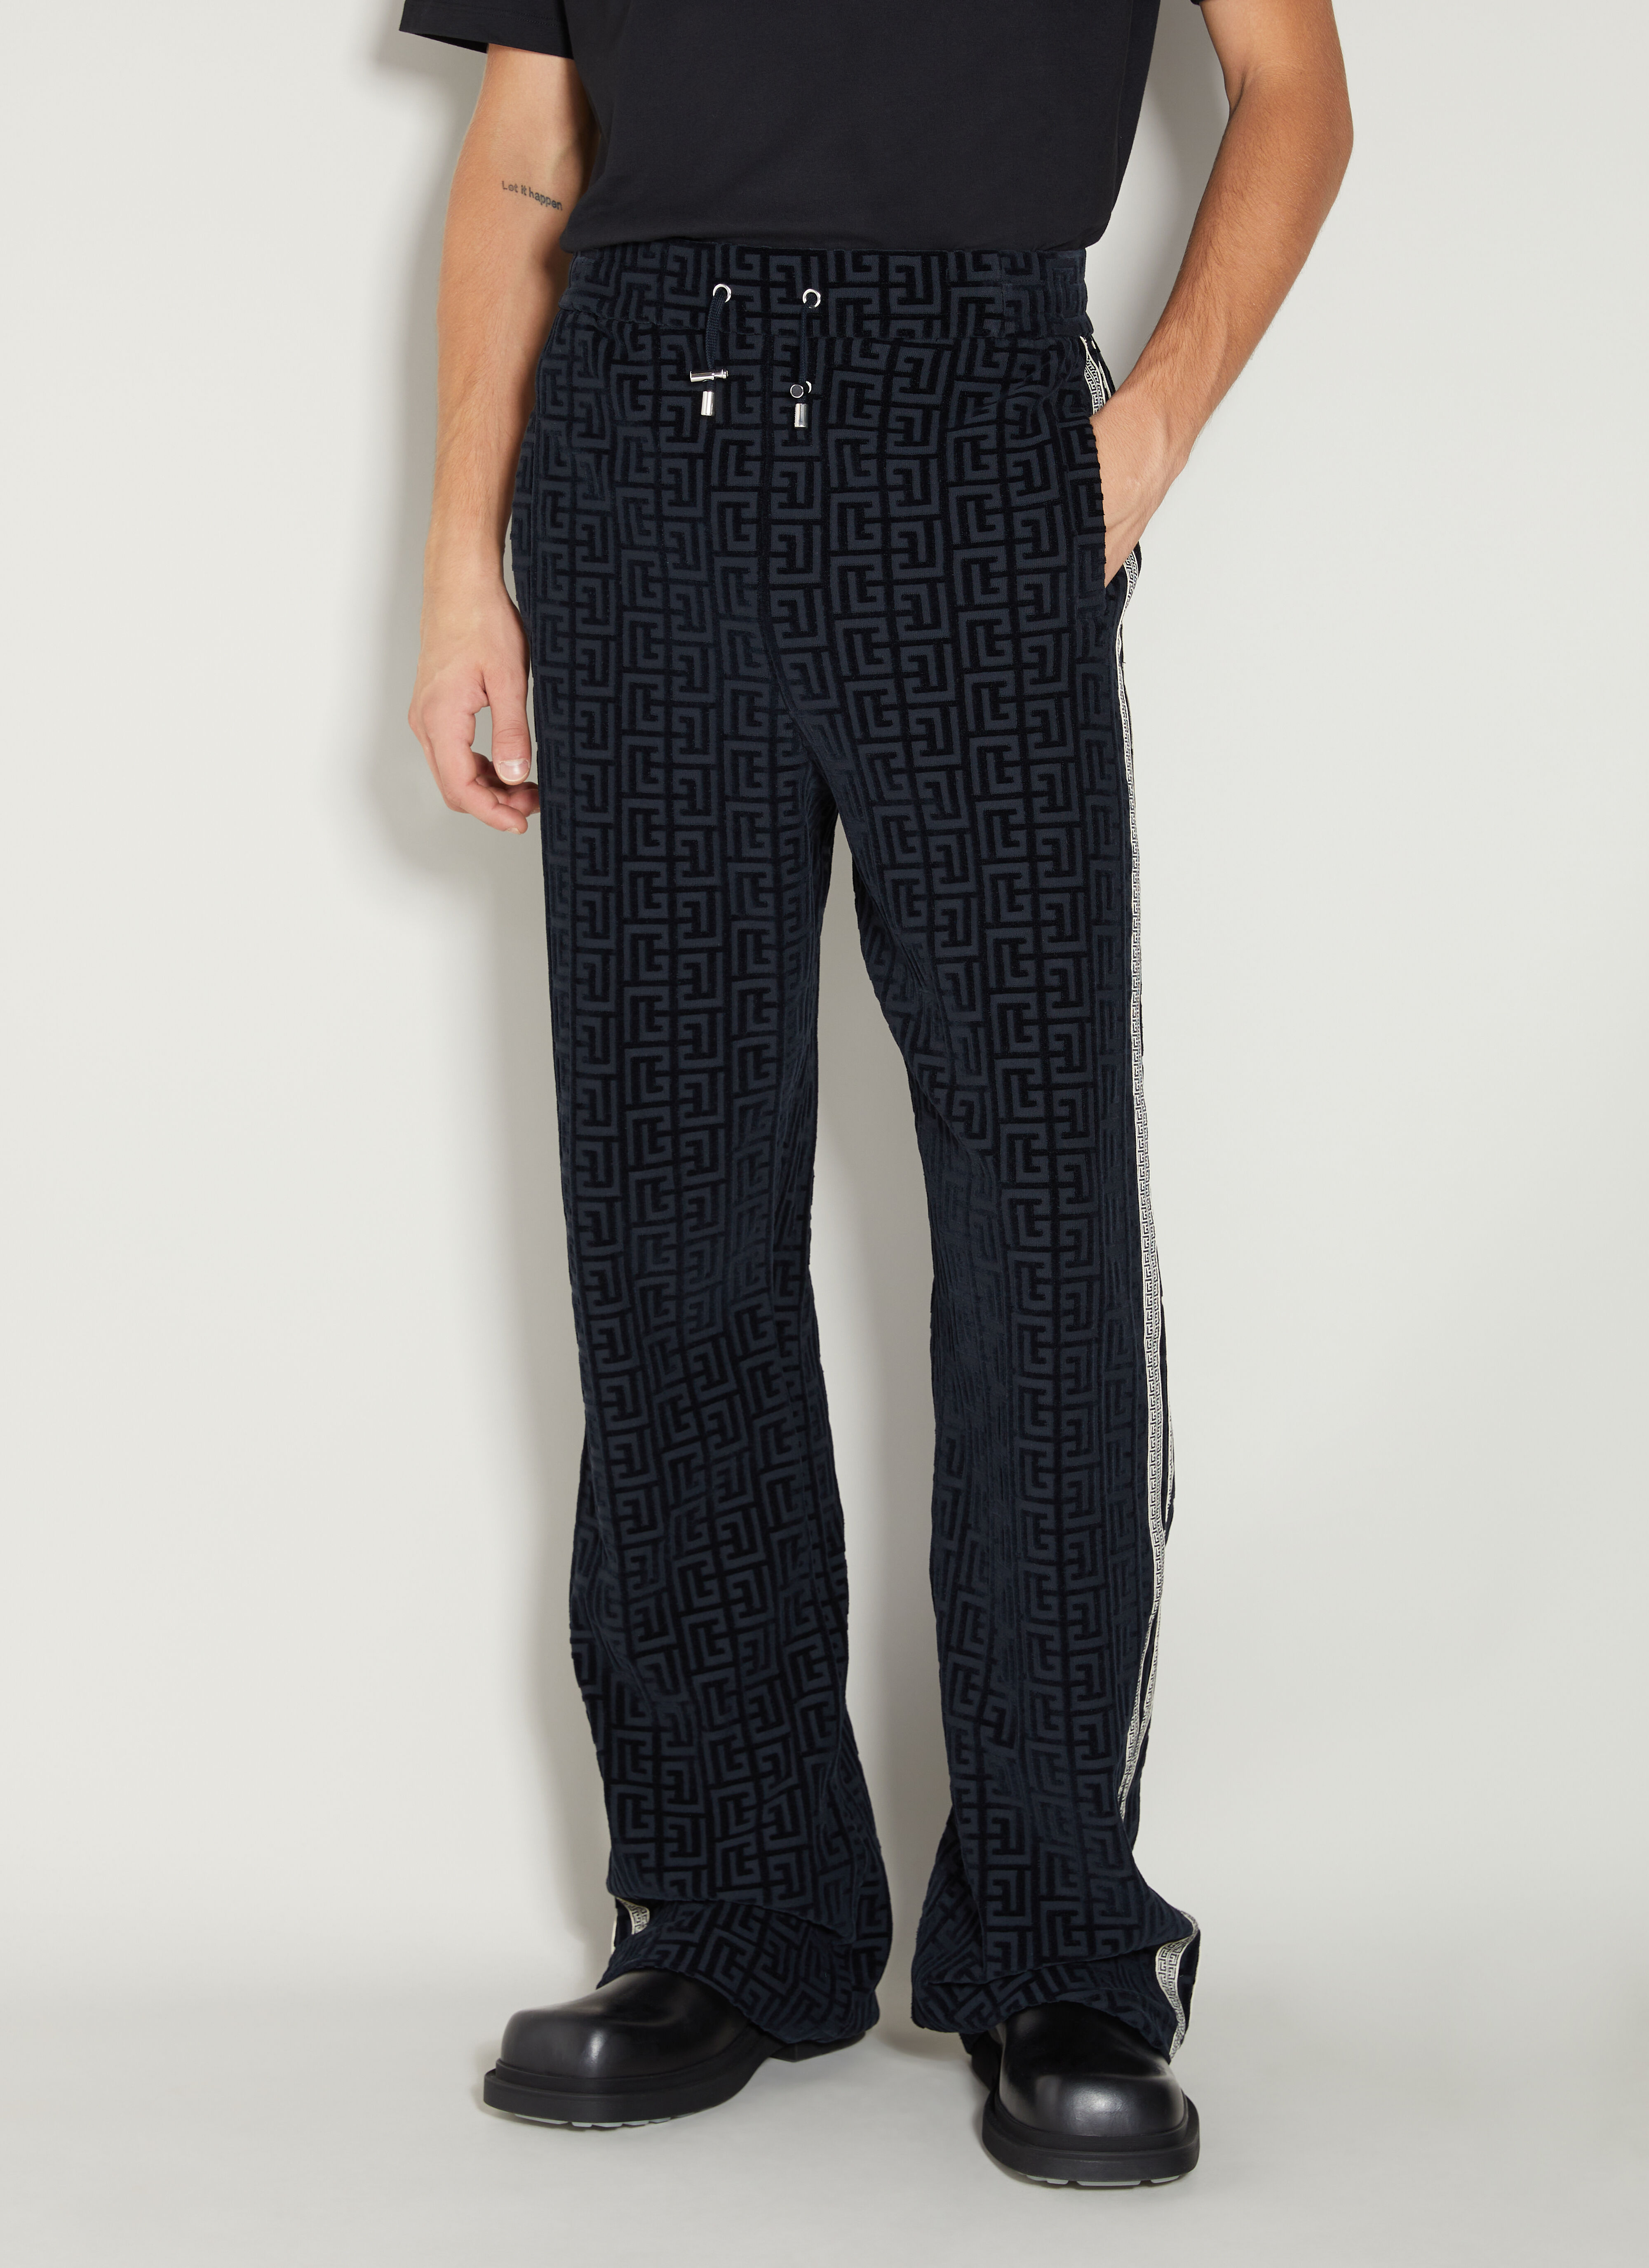 Lanvin Velvet Monogram Pyjama Pants Black lnv0154006